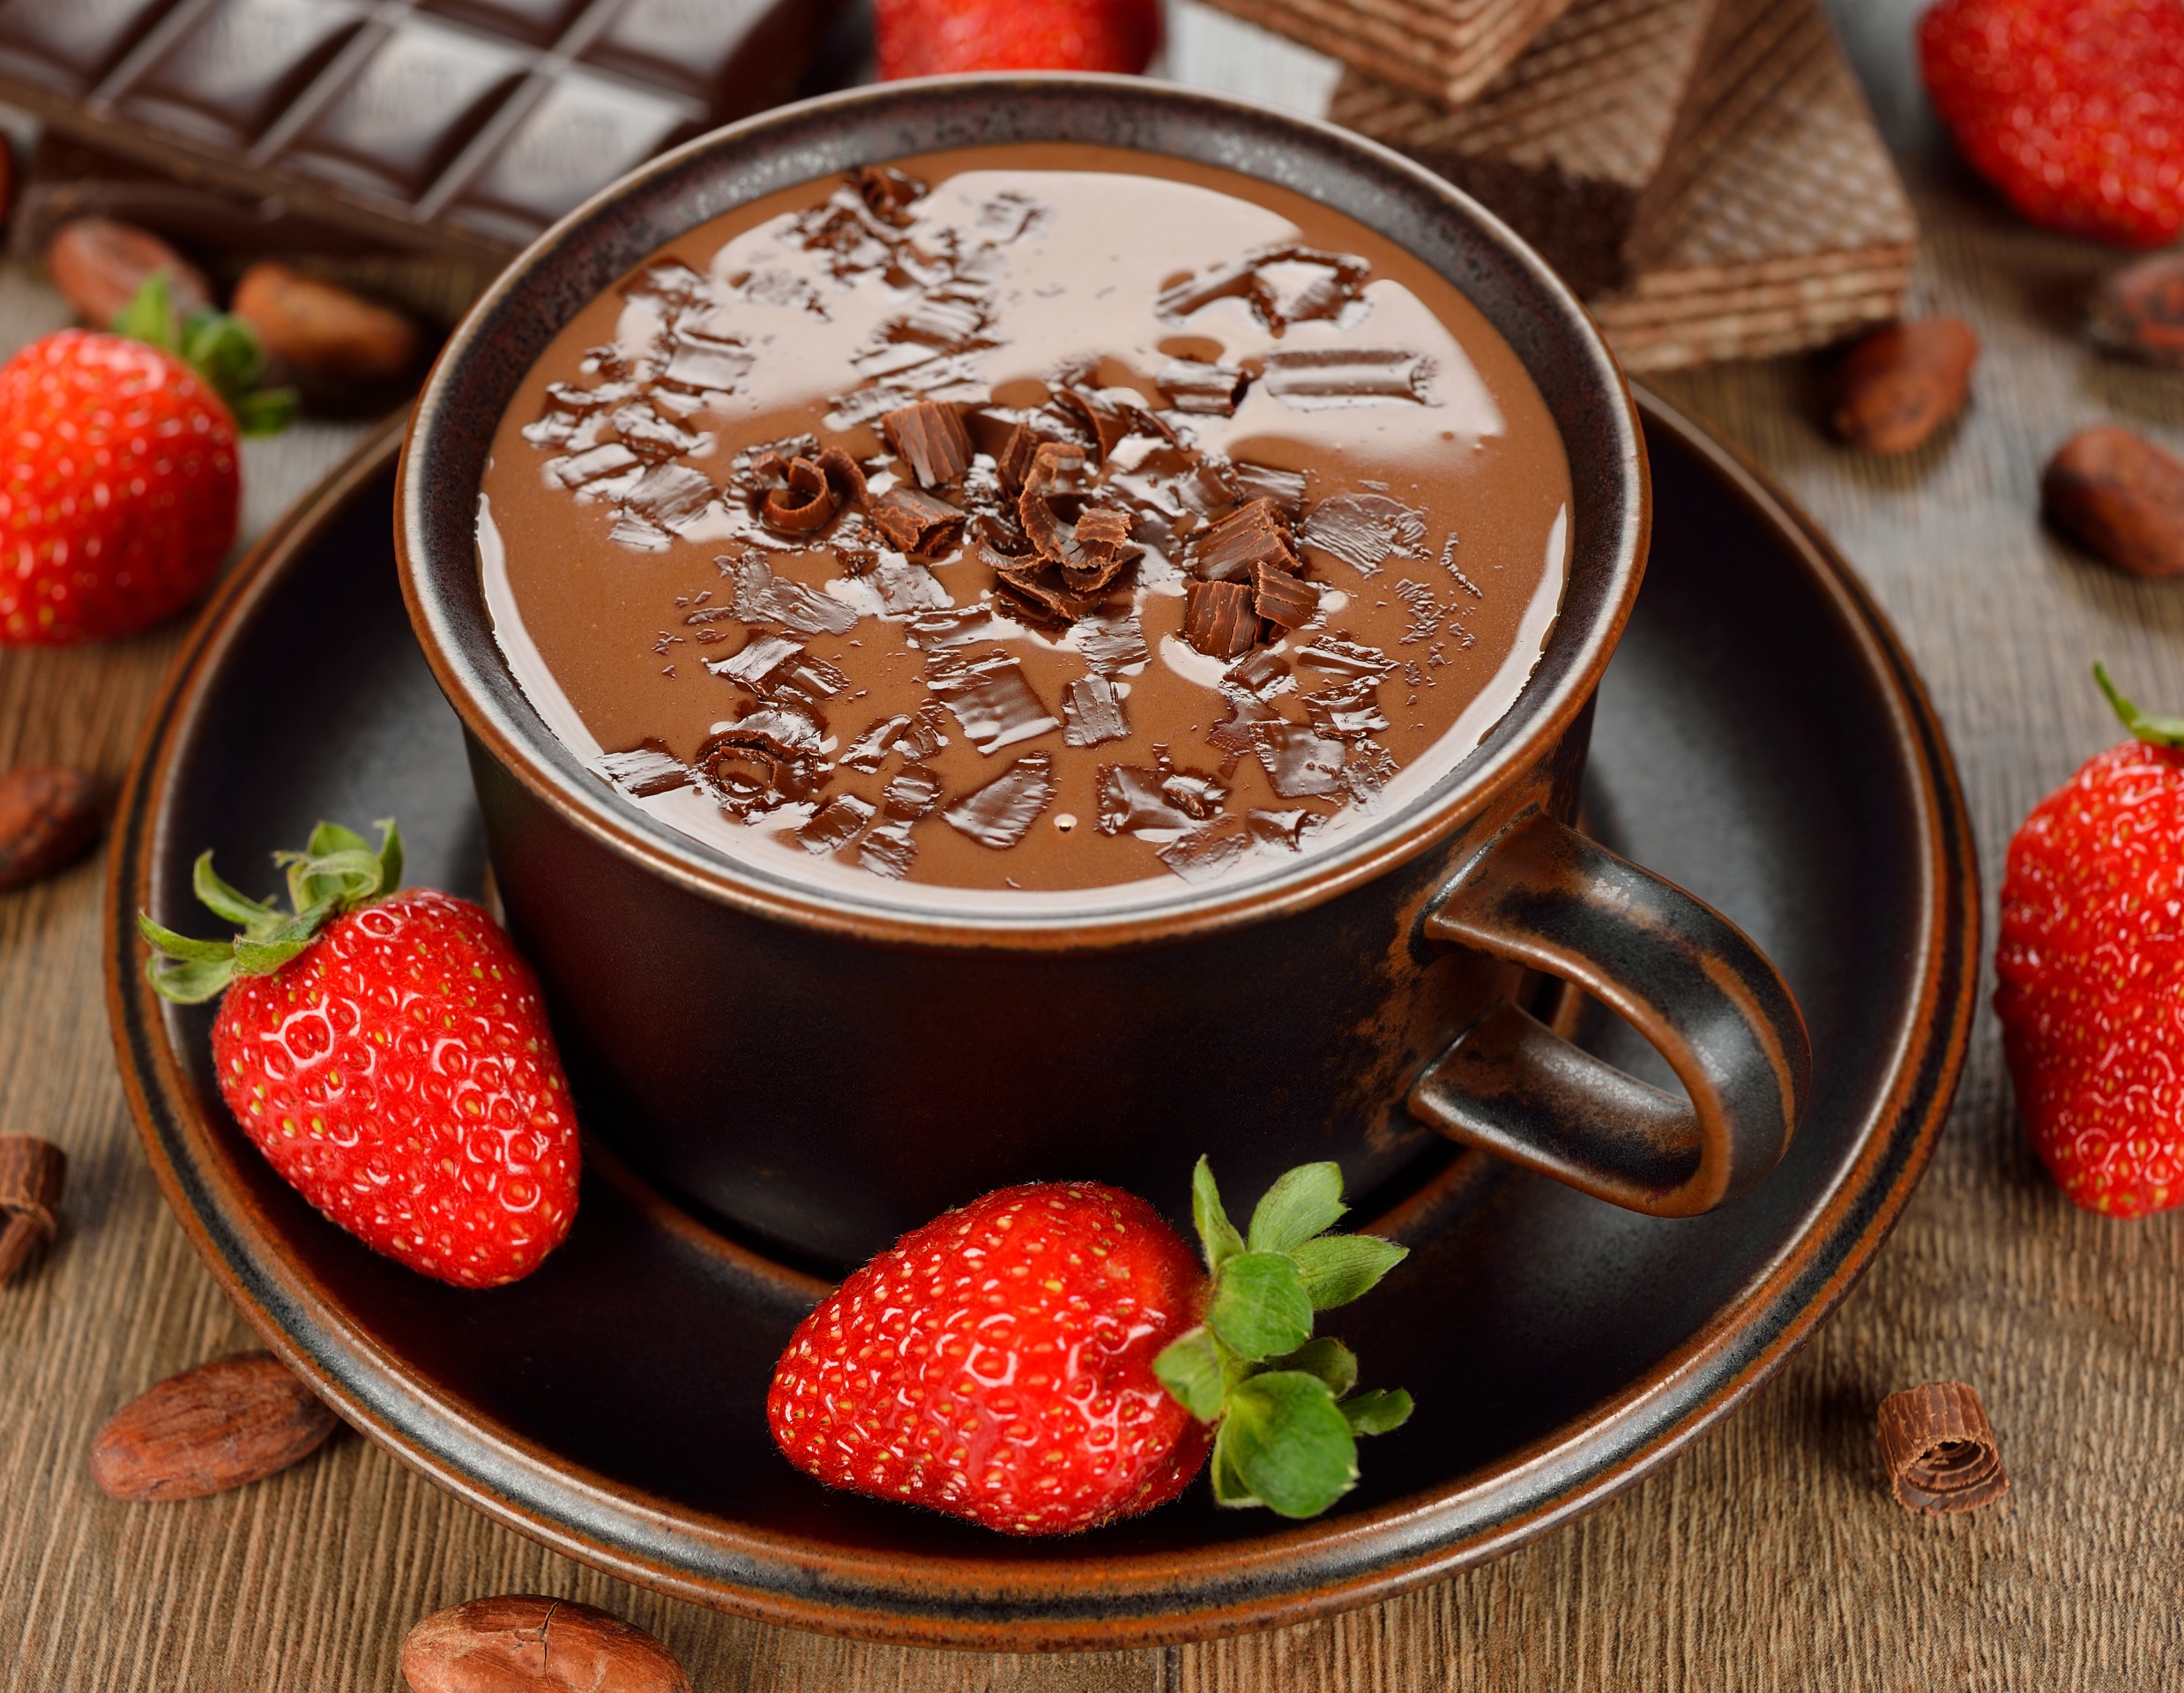 Как сделать идеальный горячий шоколад: 5 Tips for Making the Perfect Hot Chocolate